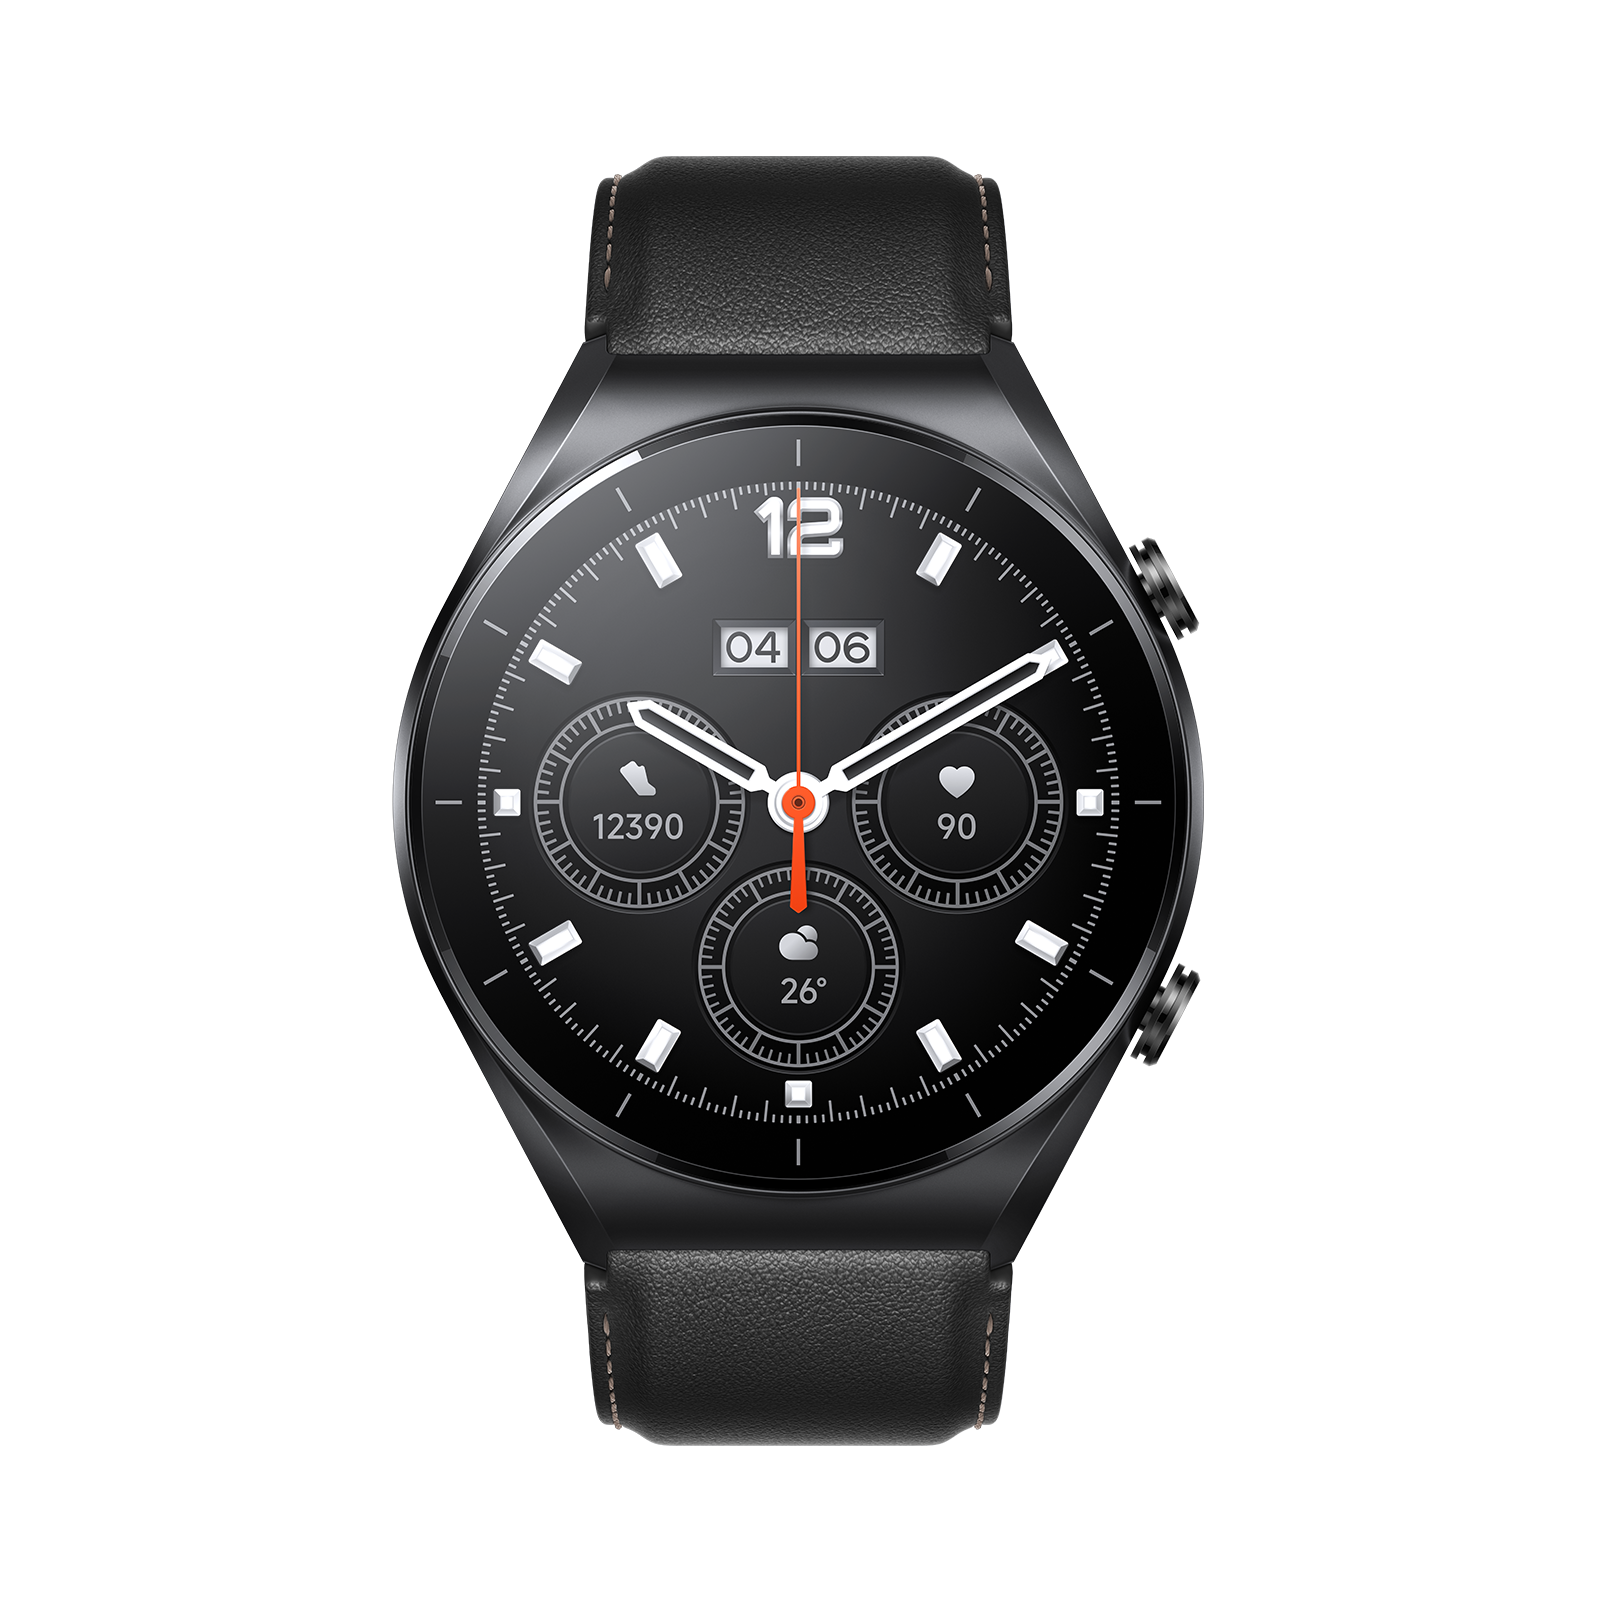 Xiaomi Watch S1 Black | Stay classy, stay fit | 117 modalità fitness | Sito ufficiale Xiaomi